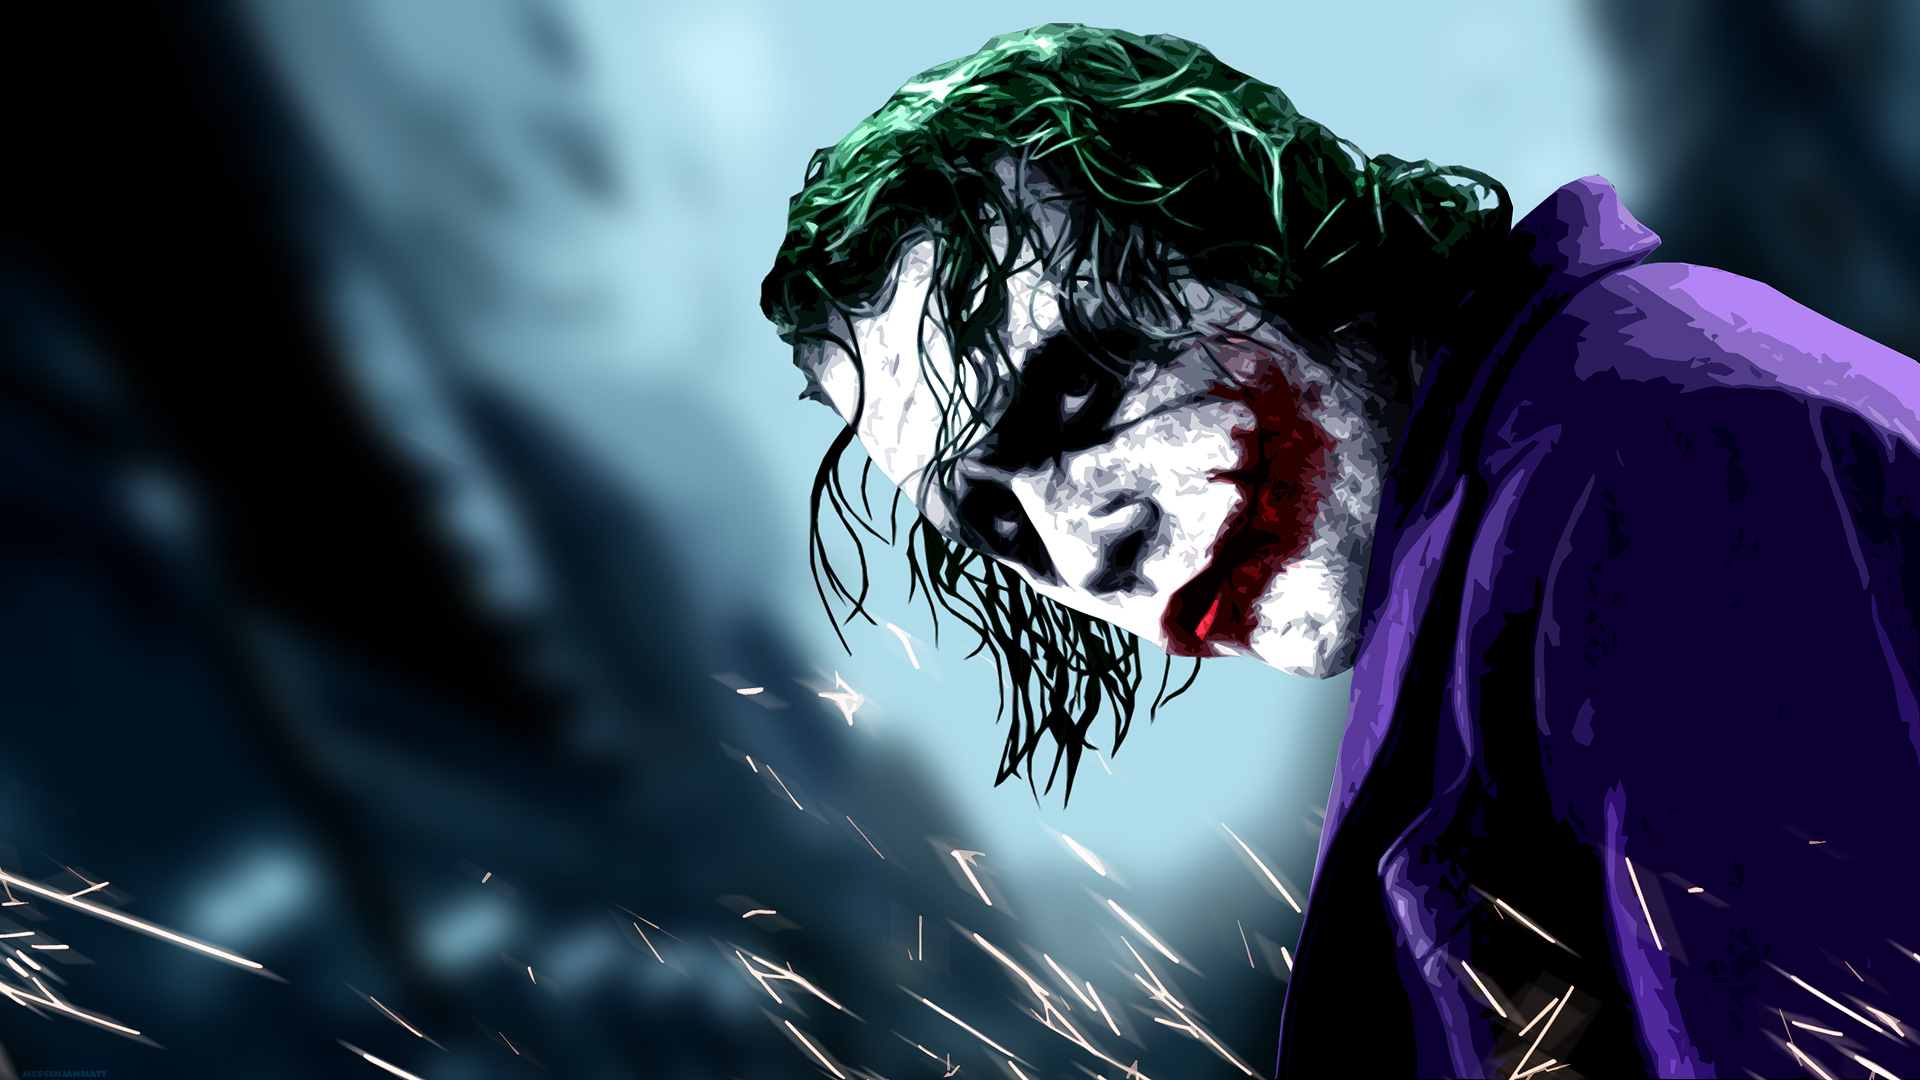 Wallpaper Of Joker Wide Background Image HD